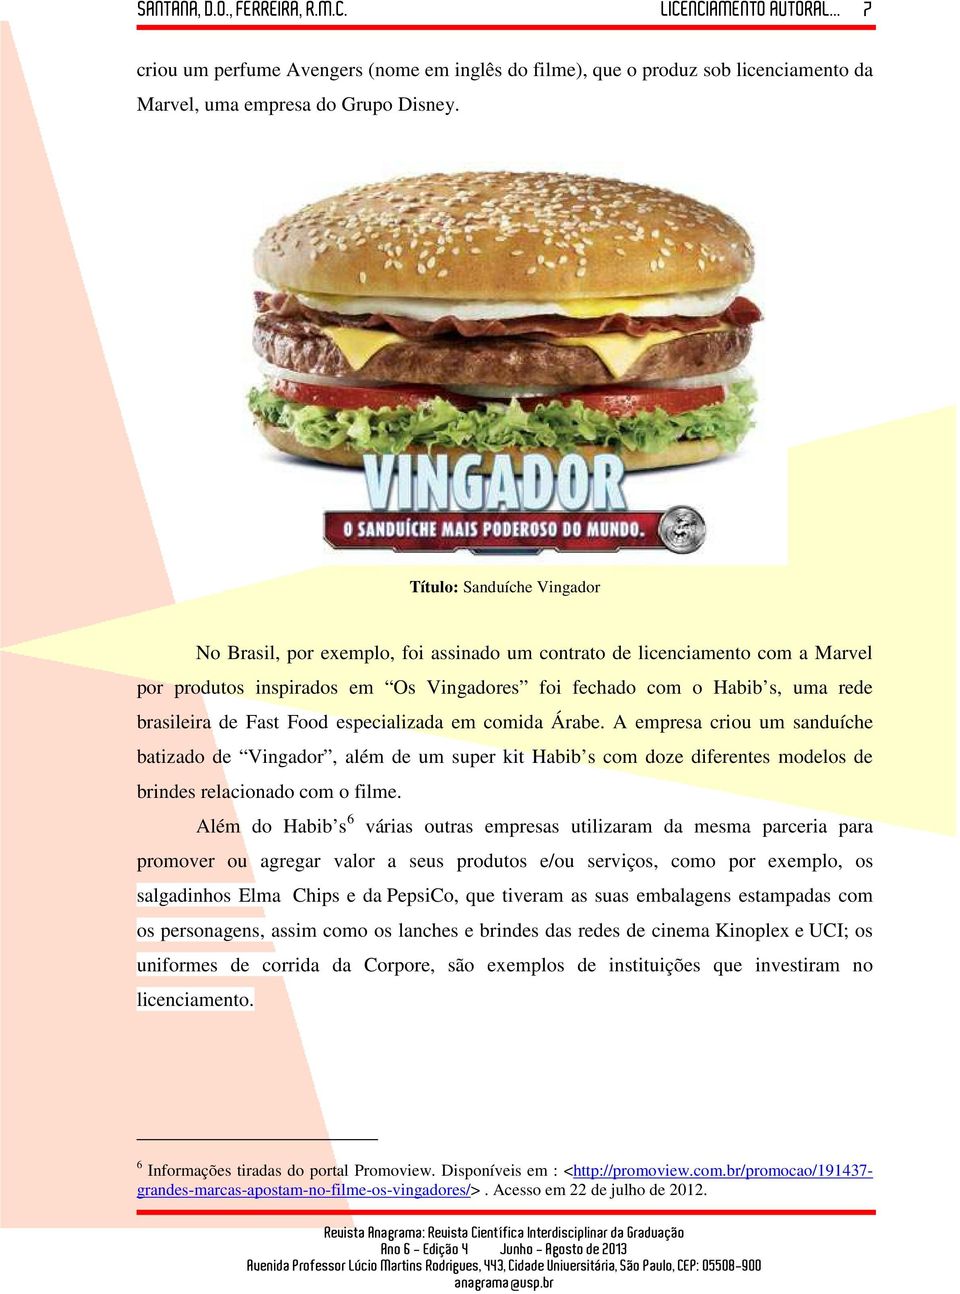 Fast Food especializada em comida Árabe. A empresa criou um sanduíche batizado de Vingador, além de um super kit Habib s com doze diferentes modelos de brindes relacionado com o filme.